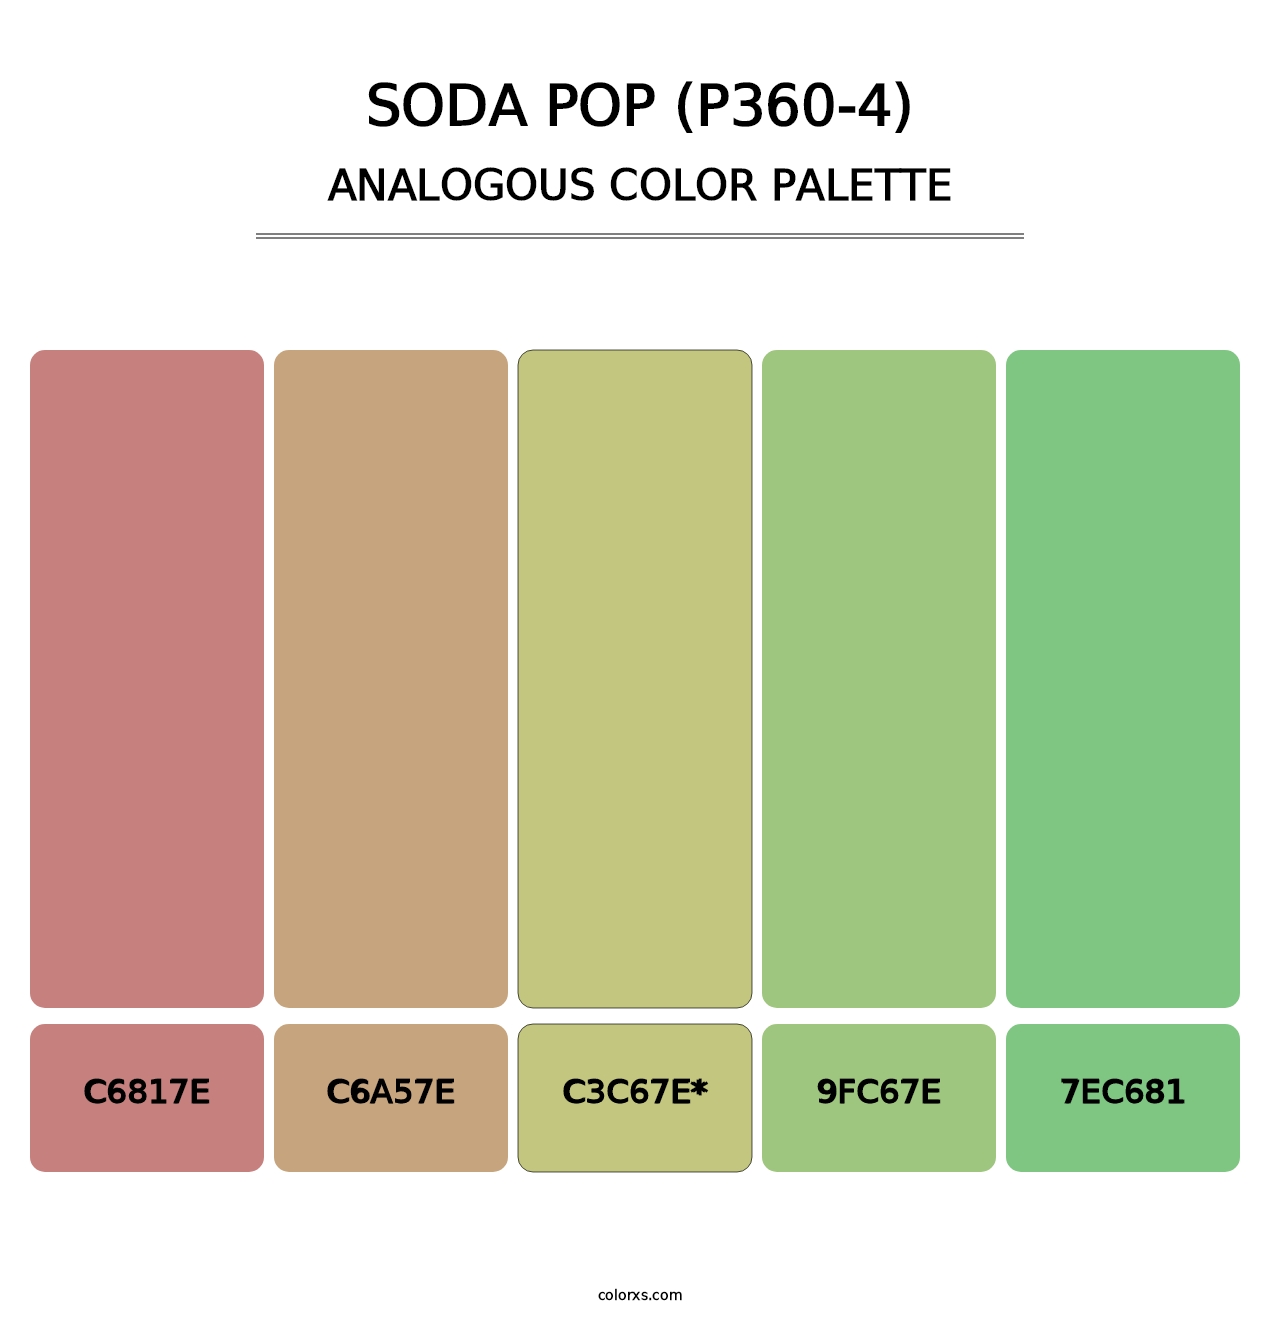 Soda Pop (P360-4) - Analogous Color Palette